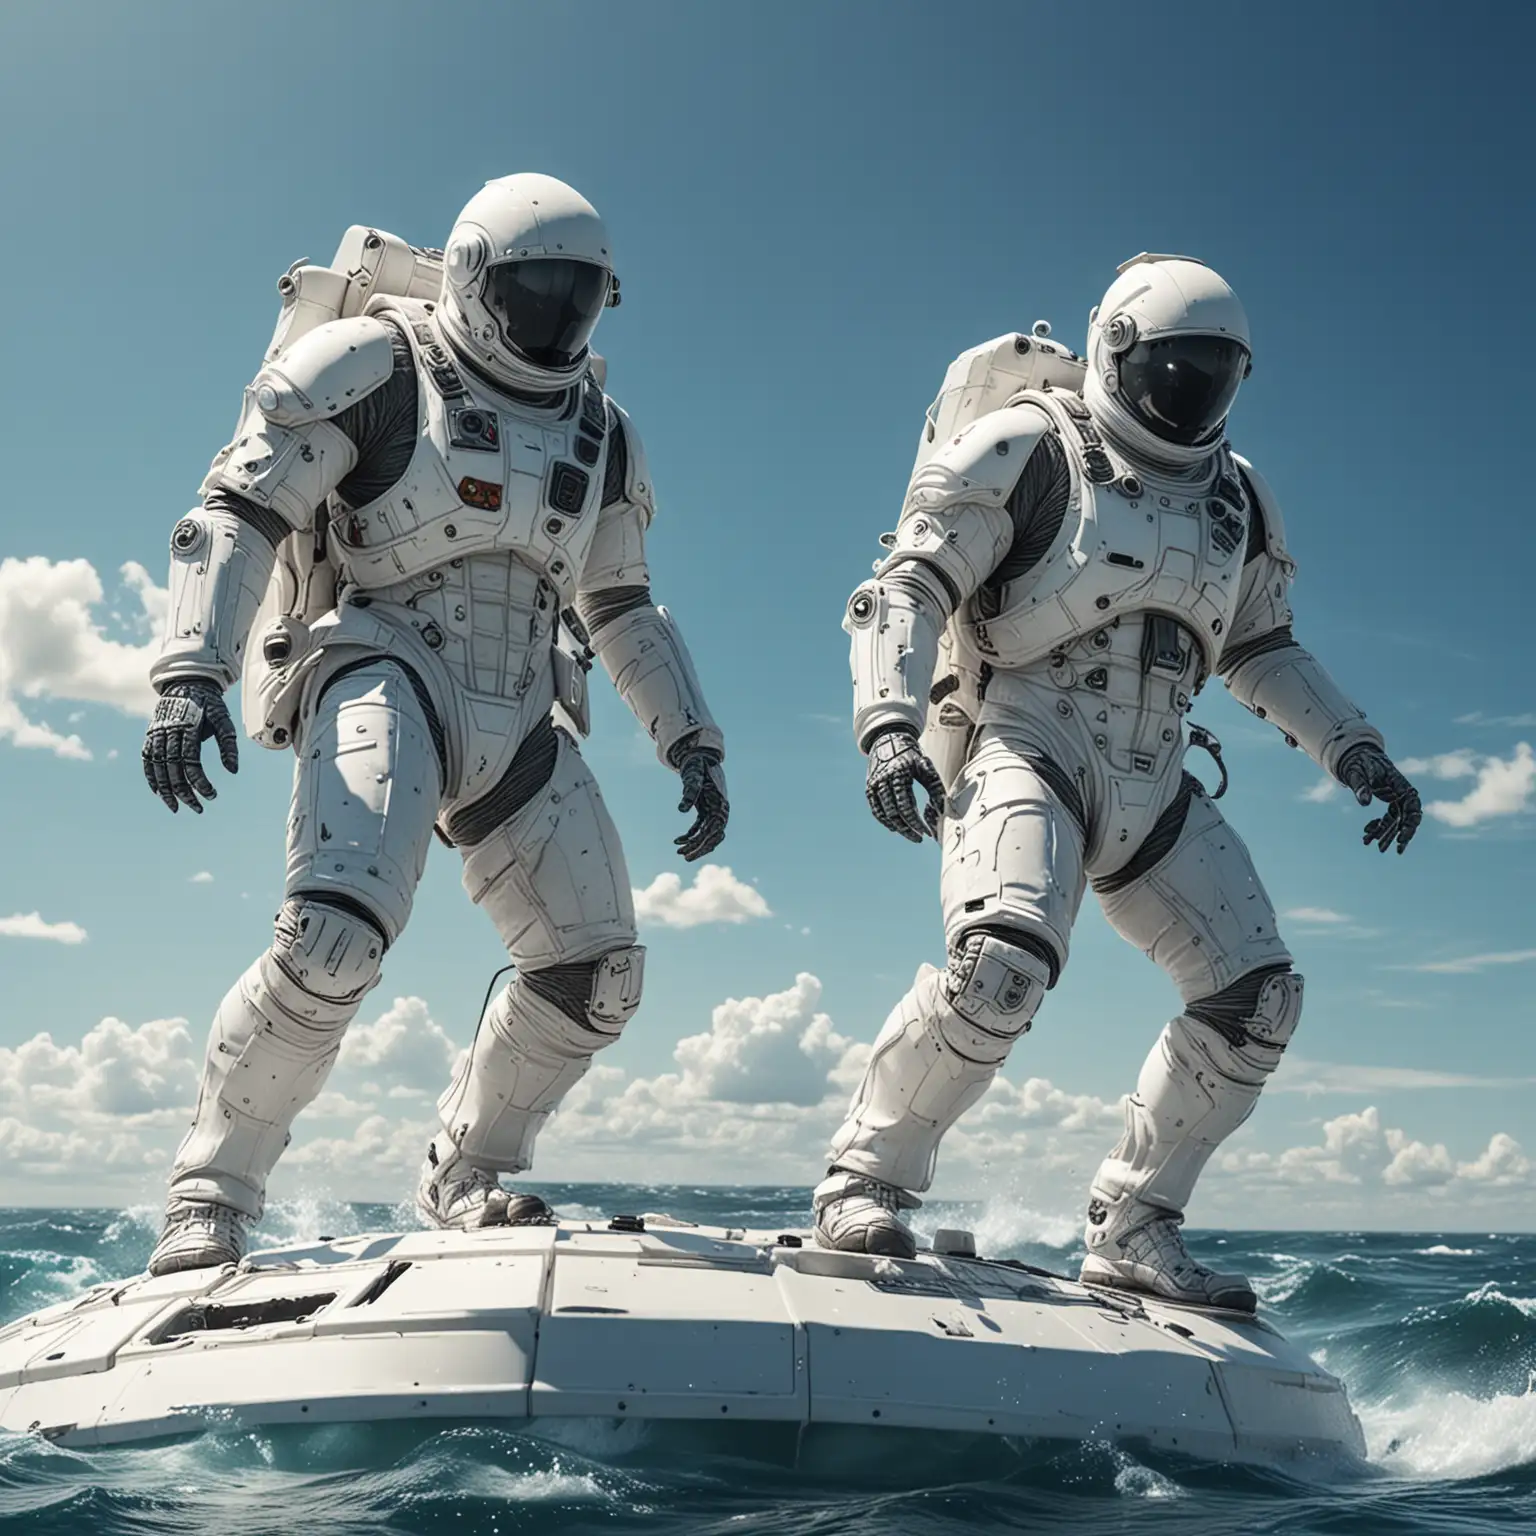 Hyperrealistic SciFi Space Soldiers Surfing on Space Raft in Ocean